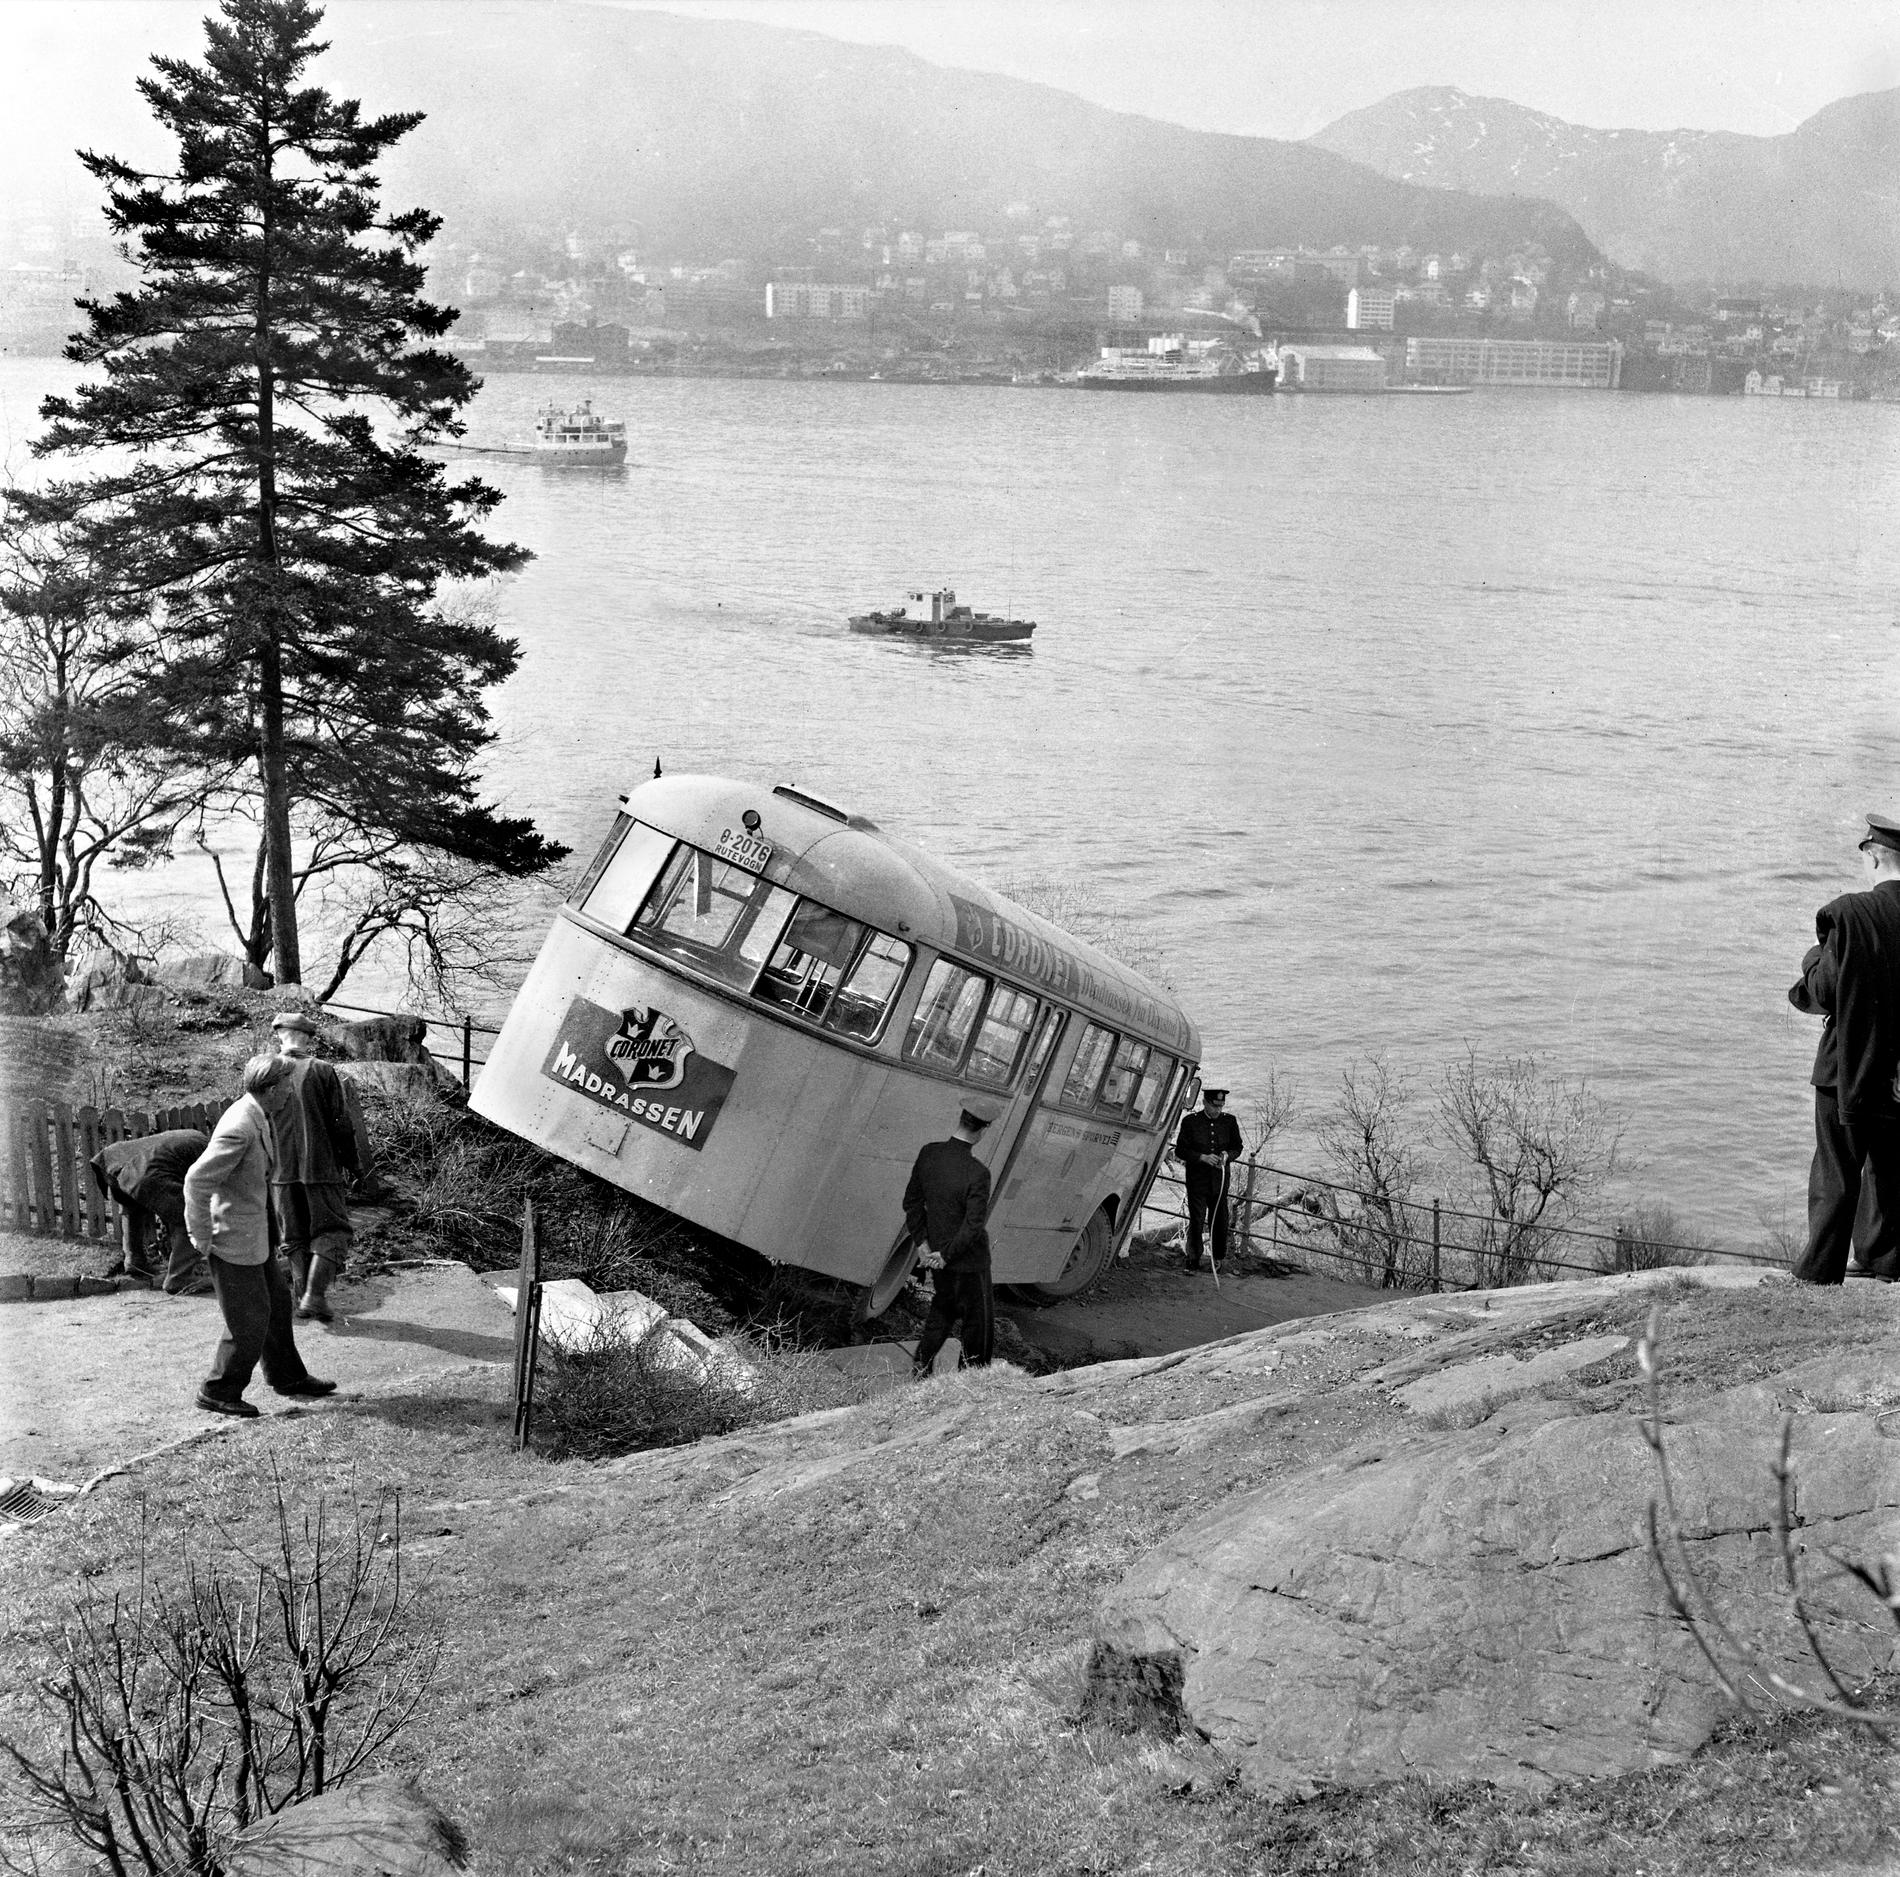 FØRERLØS: Ved endestasjonen på Nordnes var sjåføren ute et nødvendig ærend, da denne bussen begynte å gå for egen maskin. Det var våren 1956. Til alt hell stoppet den ville ferden før bussen havnet i sjøen.